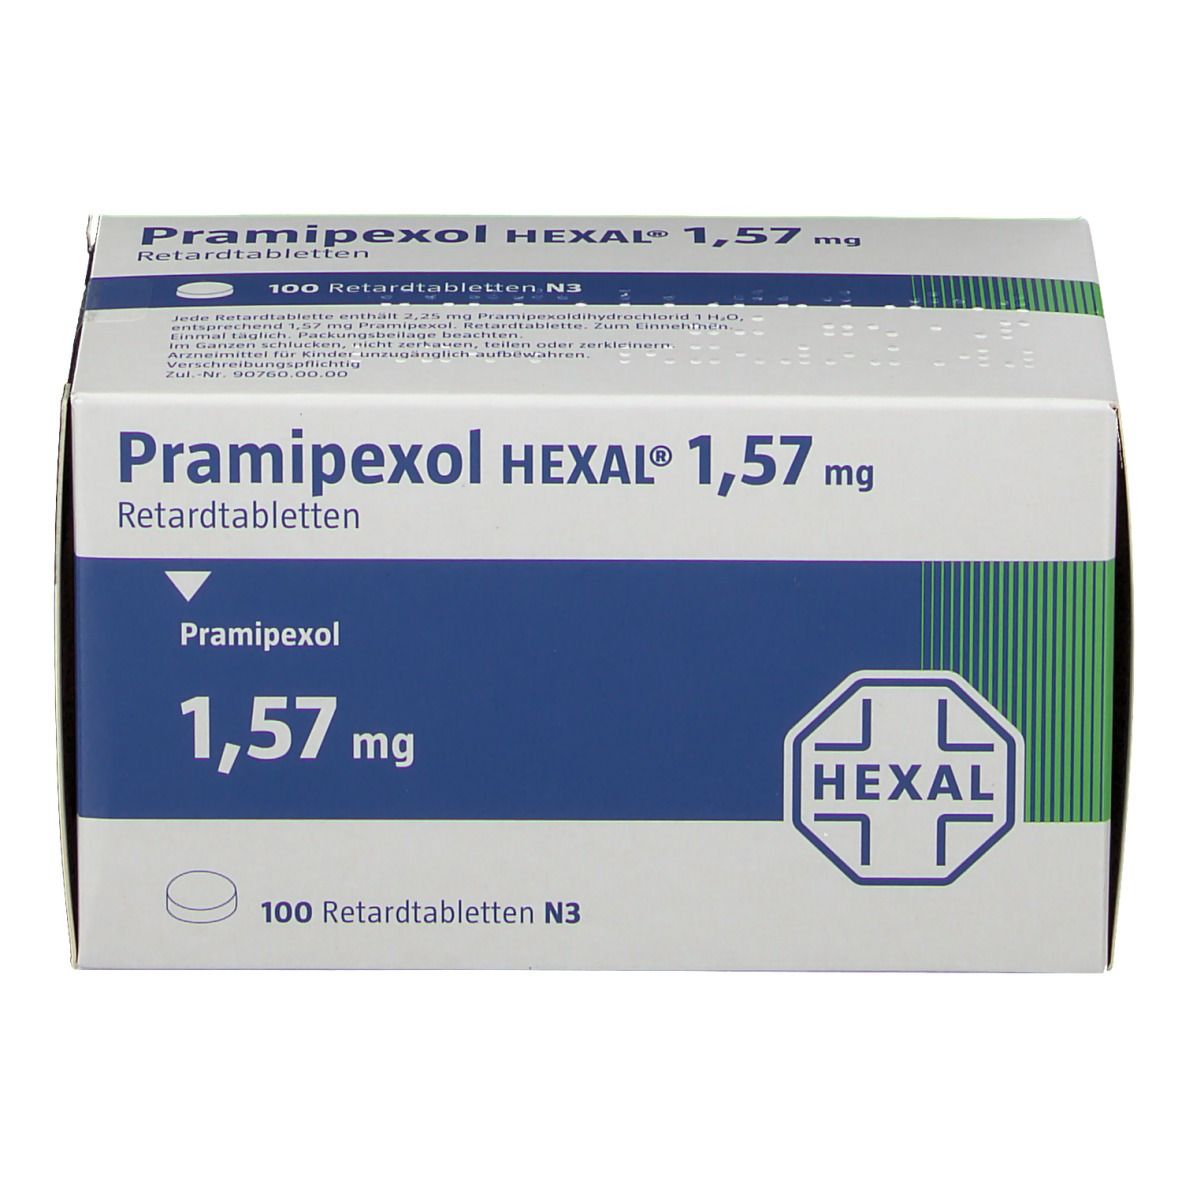 Pramipexol HEXAL® 1,57 mg